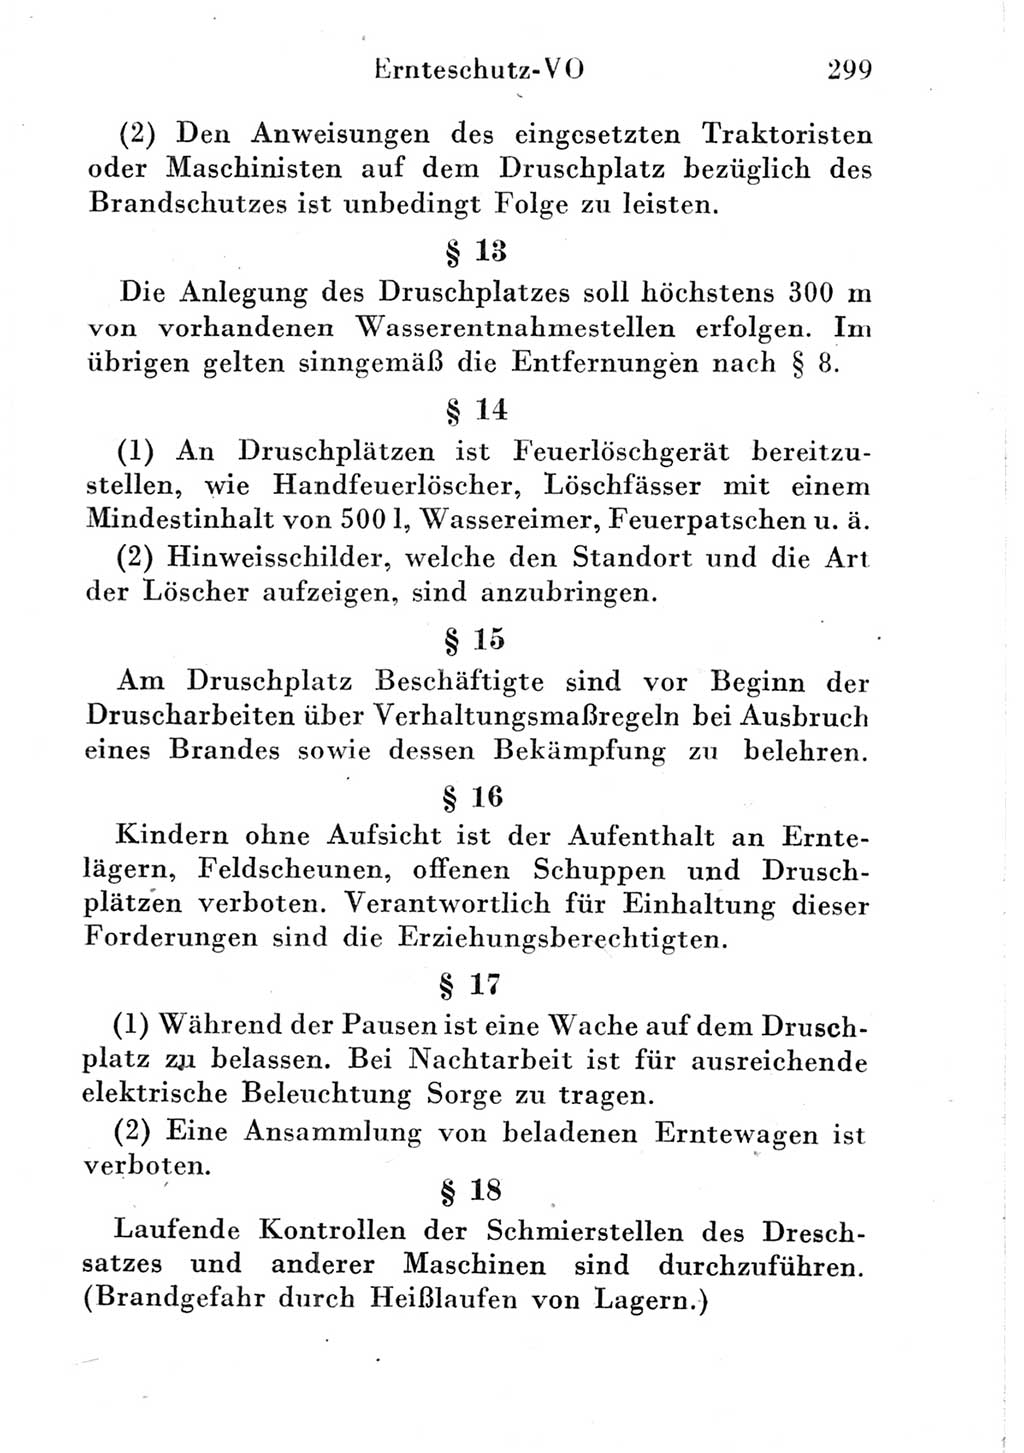 Strafgesetzbuch (StGB) und andere Strafgesetze [Deutsche Demokratische Republik (DDR)] 1951, Seite 299 (StGB Strafges. DDR 1951, S. 299)